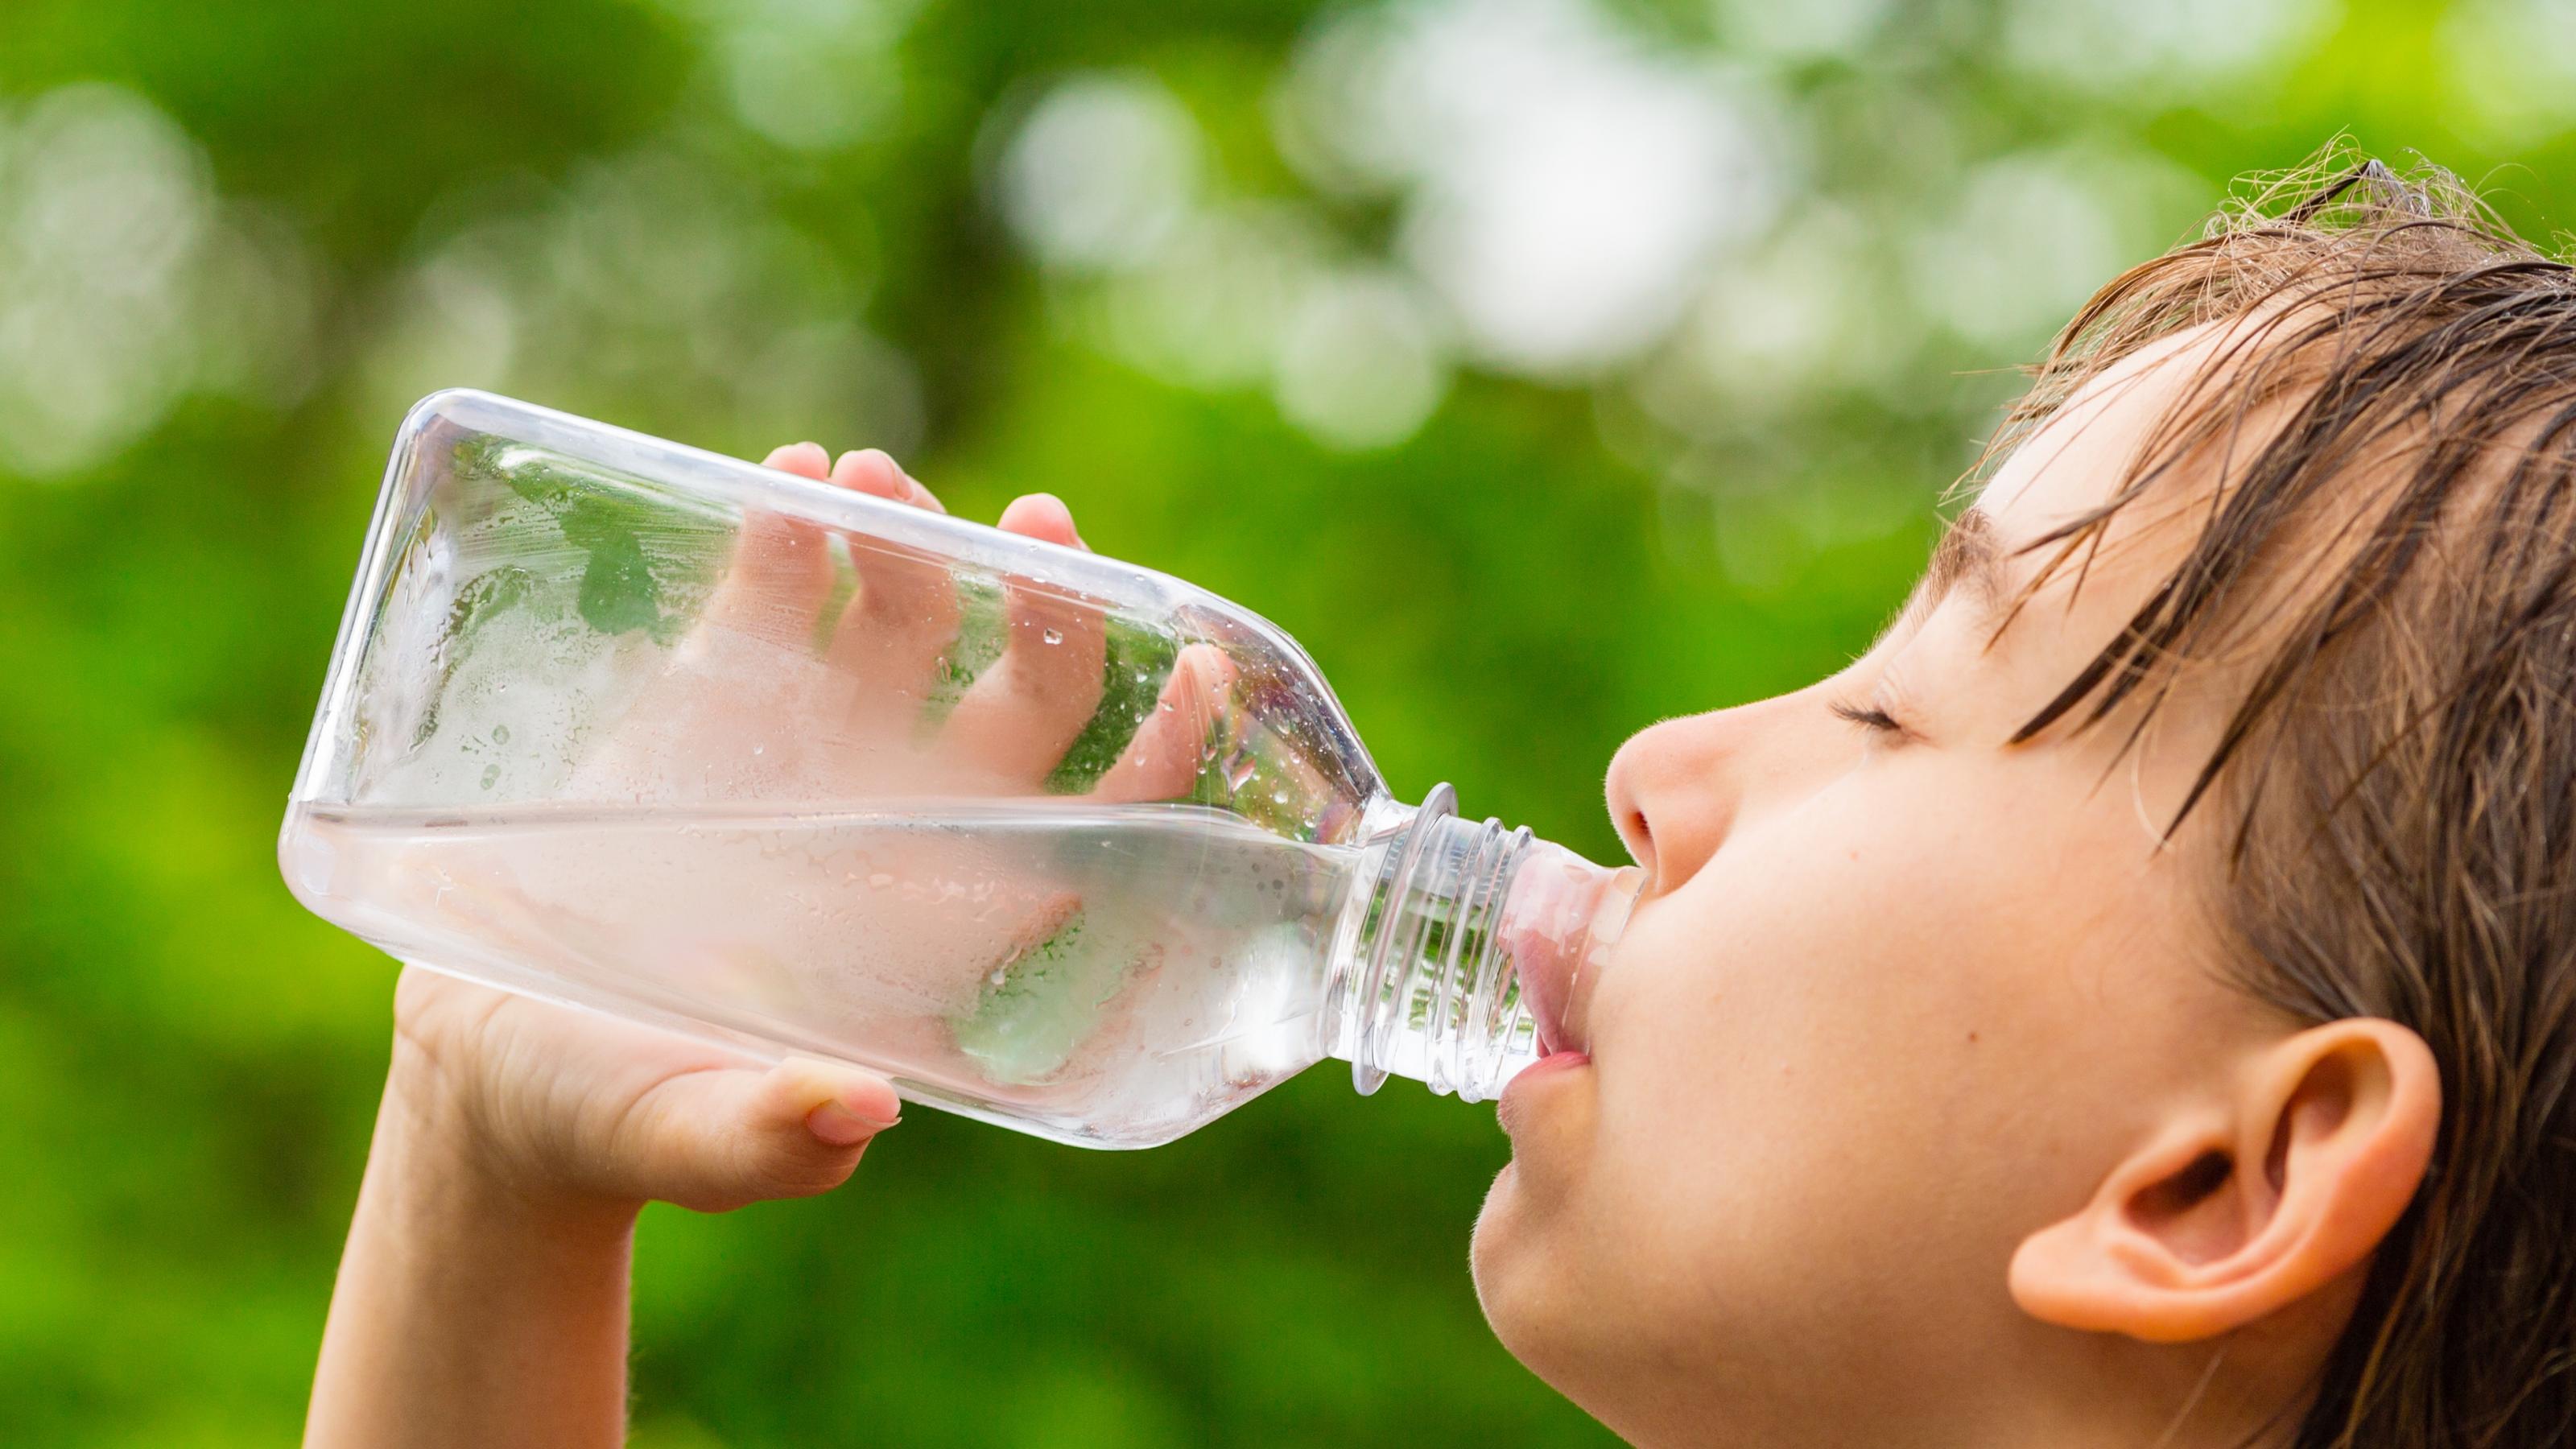 Bei Hitze: trinken! Ein großes Glas pro Stunde hilft fit zu bleiben, Kinder, Ältere und Kranke brauchen besonders viel Flüssigkeit